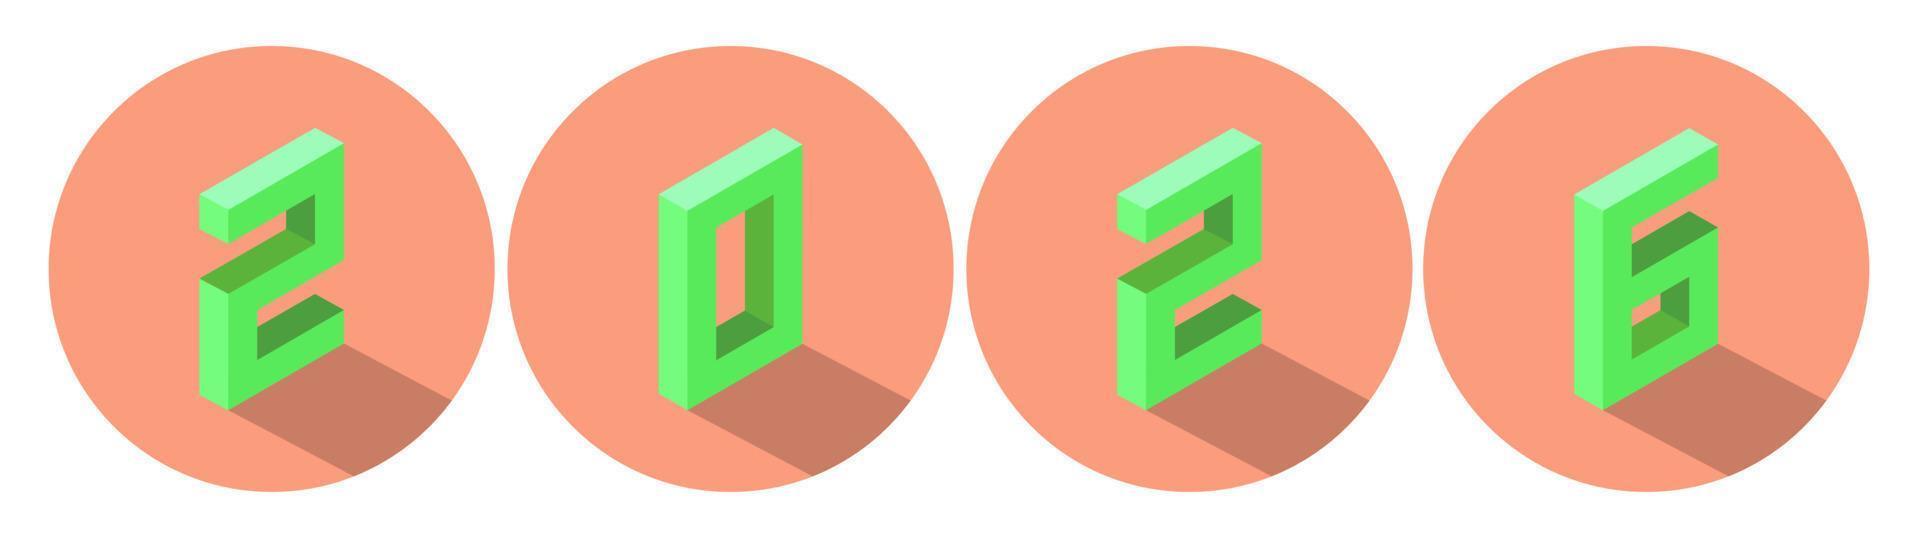 nieuw jaar groen kleur 2026 in licht Zalm kleur cirkel ontwerp. isometrische stijl. vector